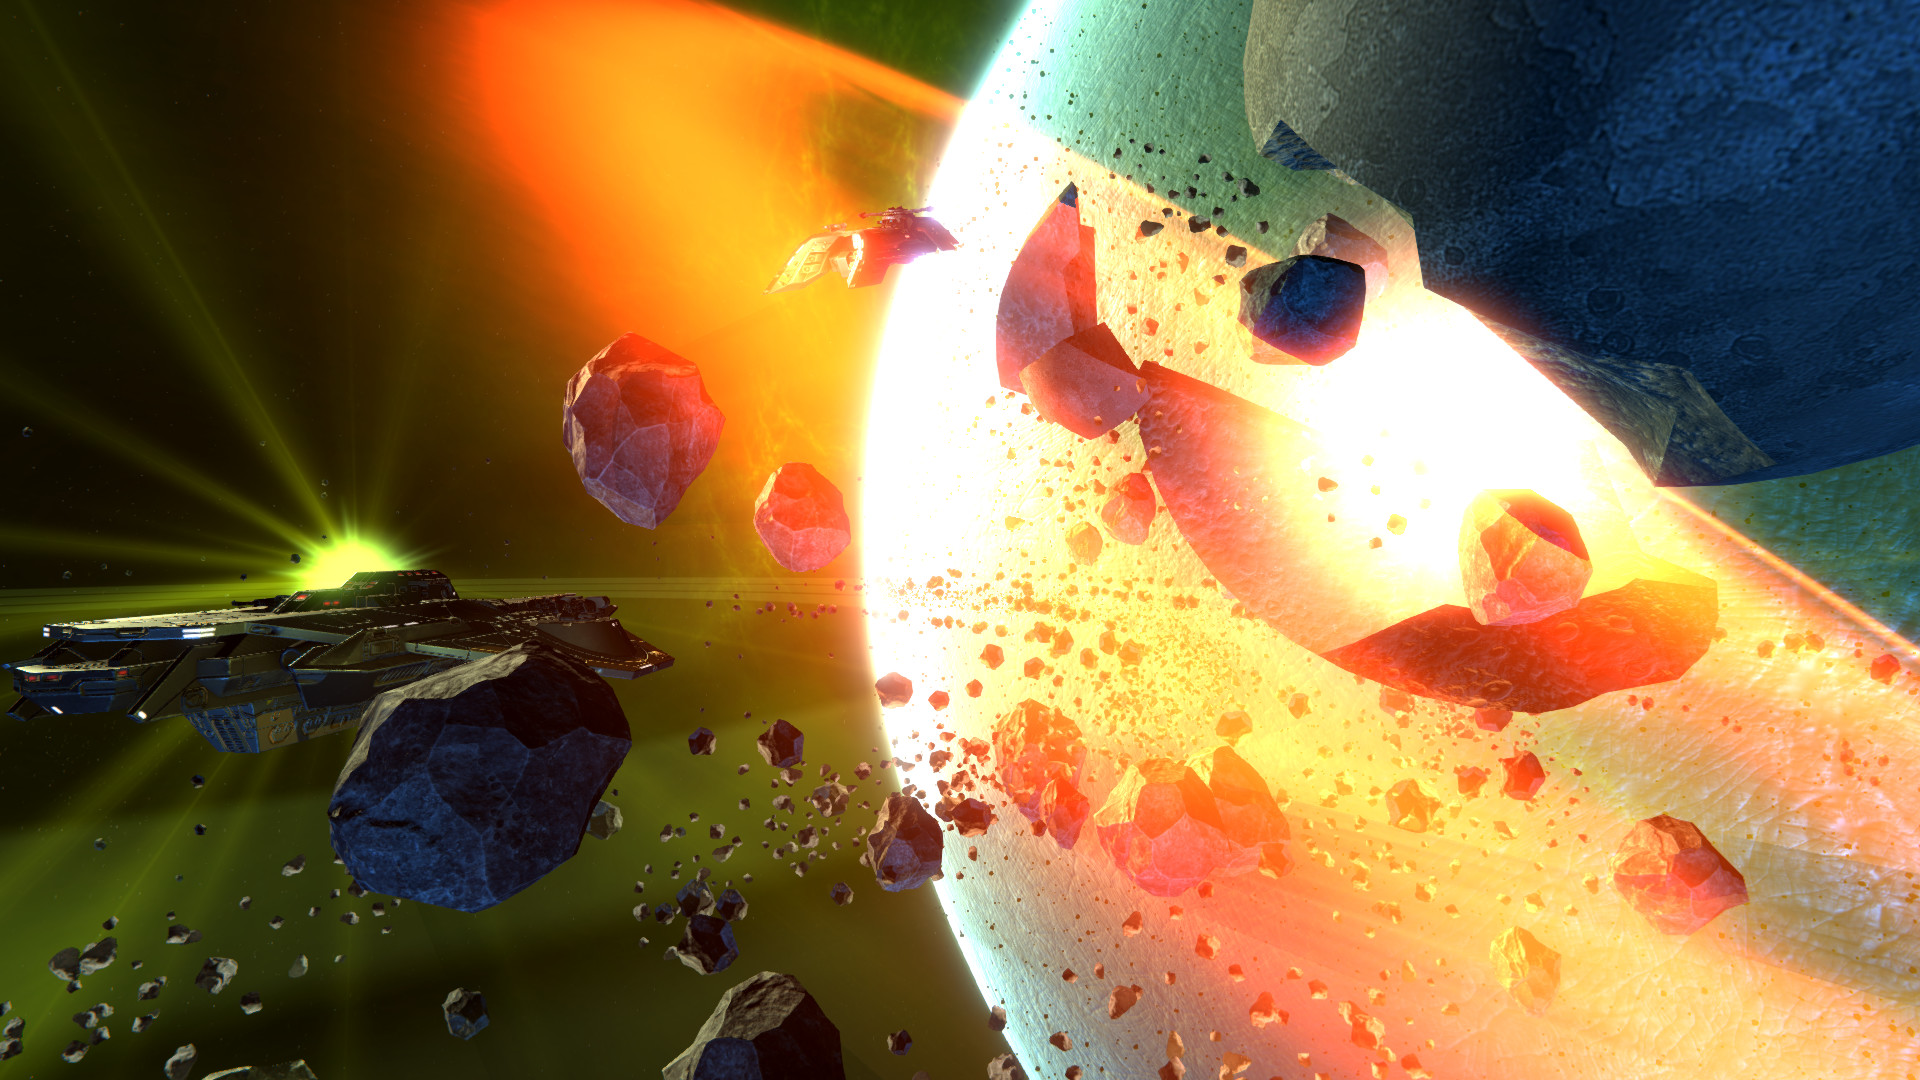 Space Battle VR screenshot